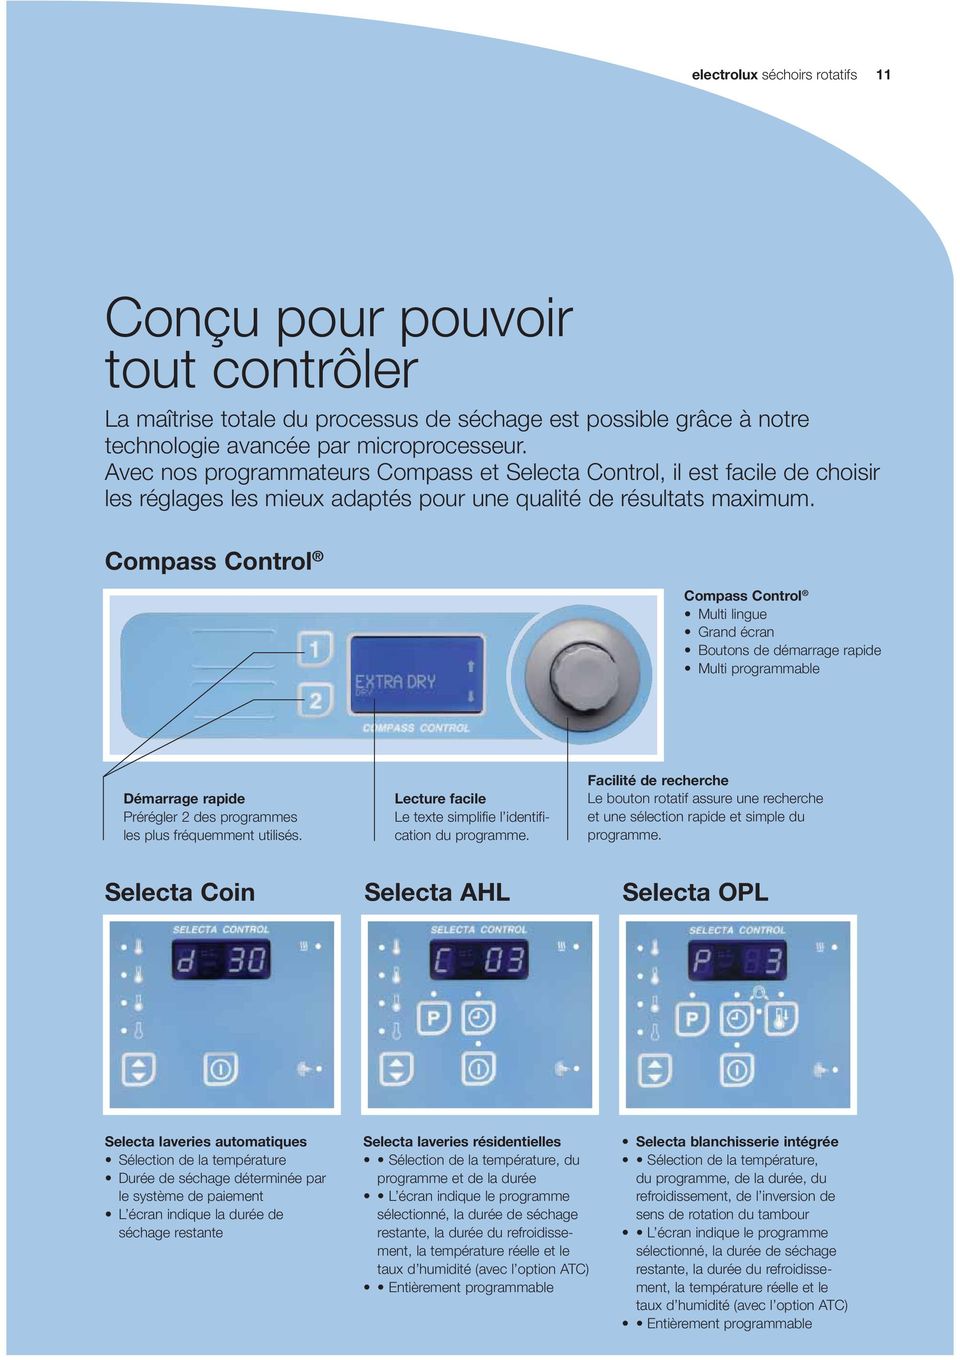 Compass Control Compass Control Multi lingue Grand écran Boutons de démarrage rapide Multi programmable Démarrage rapide Prérégler 2 des programmes les plus fréquemment utilisés.